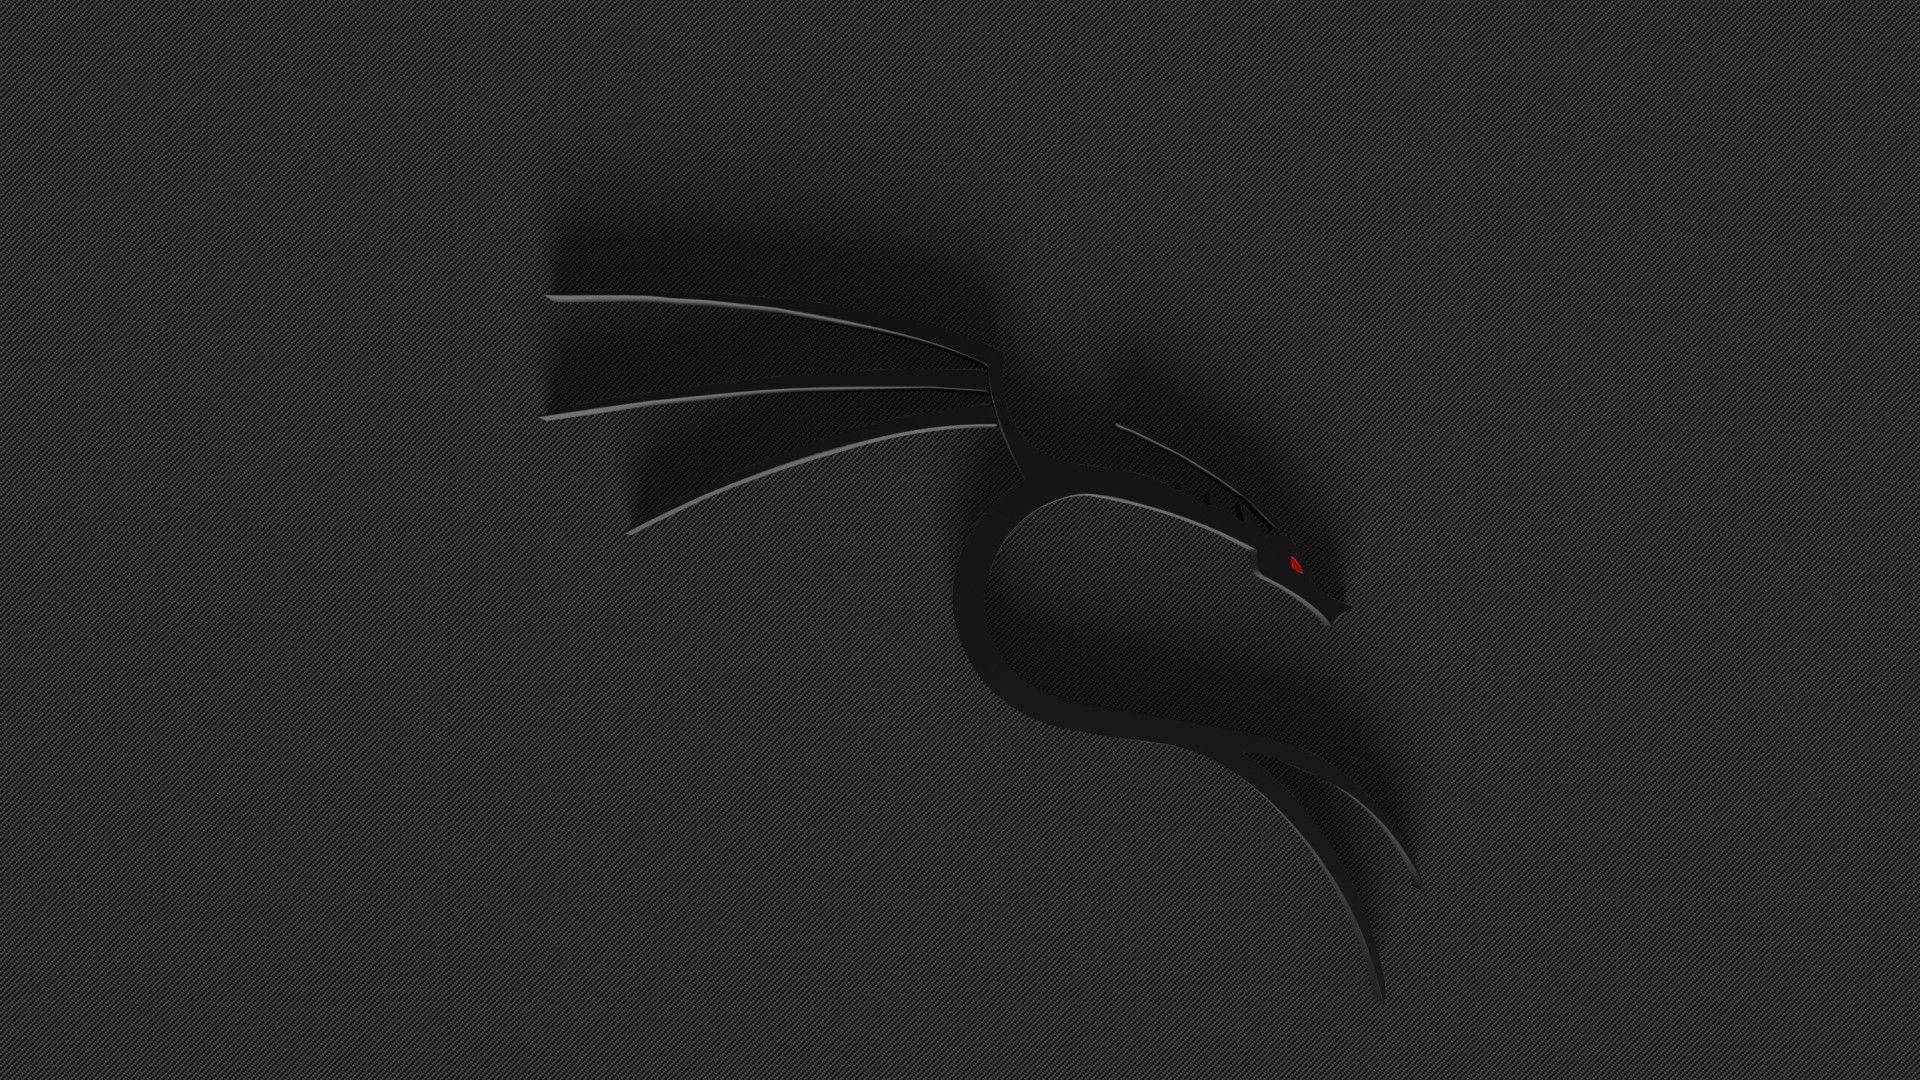 3D Kali Linux Dragon Wallpaper